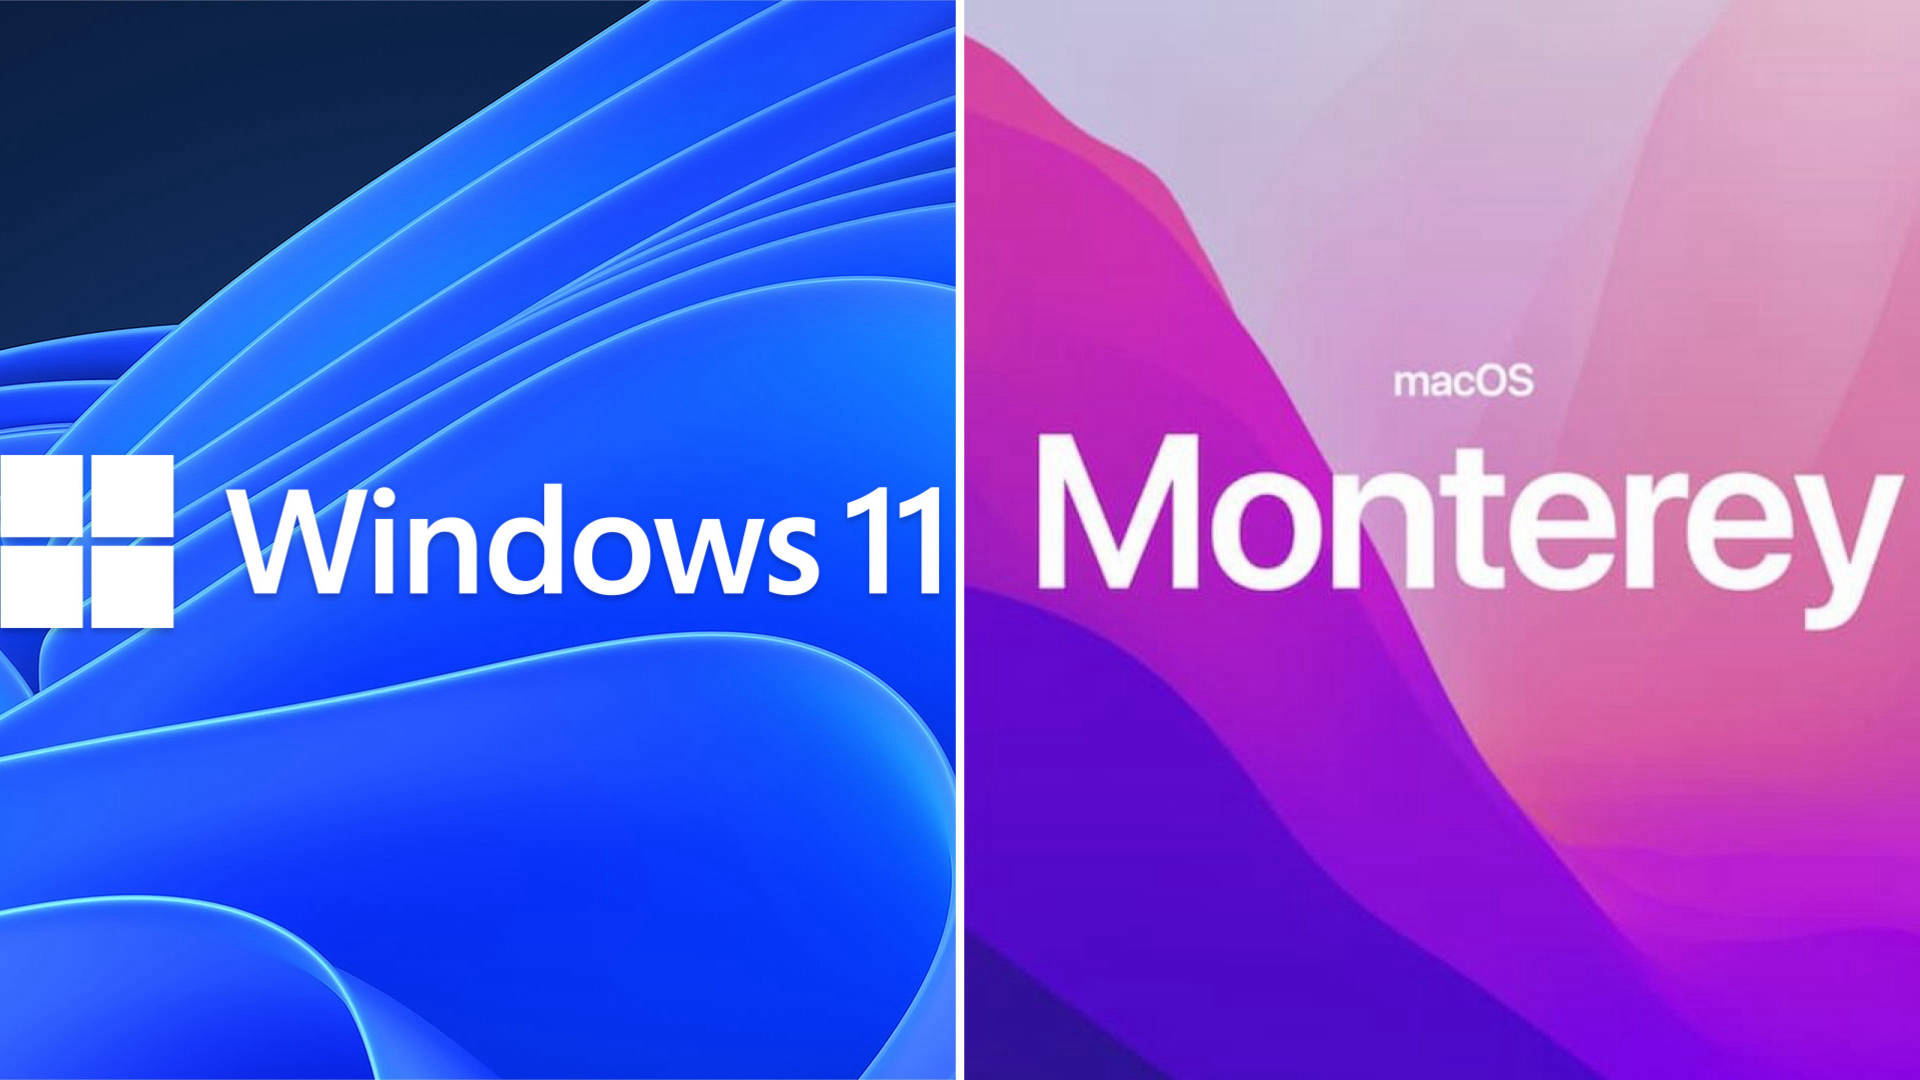 Windows 11 vs MacOS Monterey